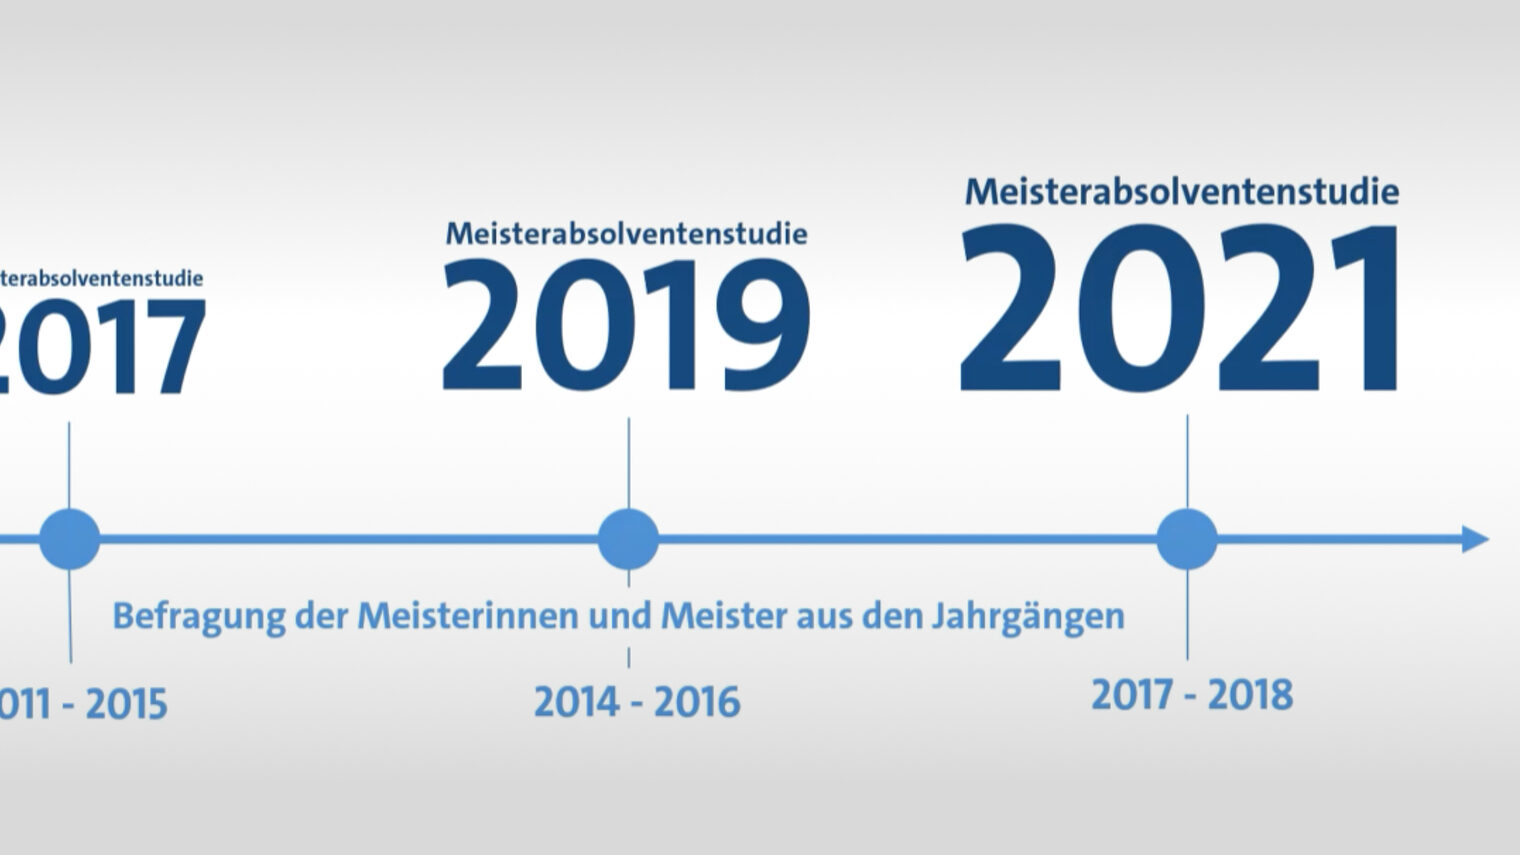 Zeitstrahl mit 2017, 2019 und 2021 zum Thema der Befragung von Meisterinnen und Meistern